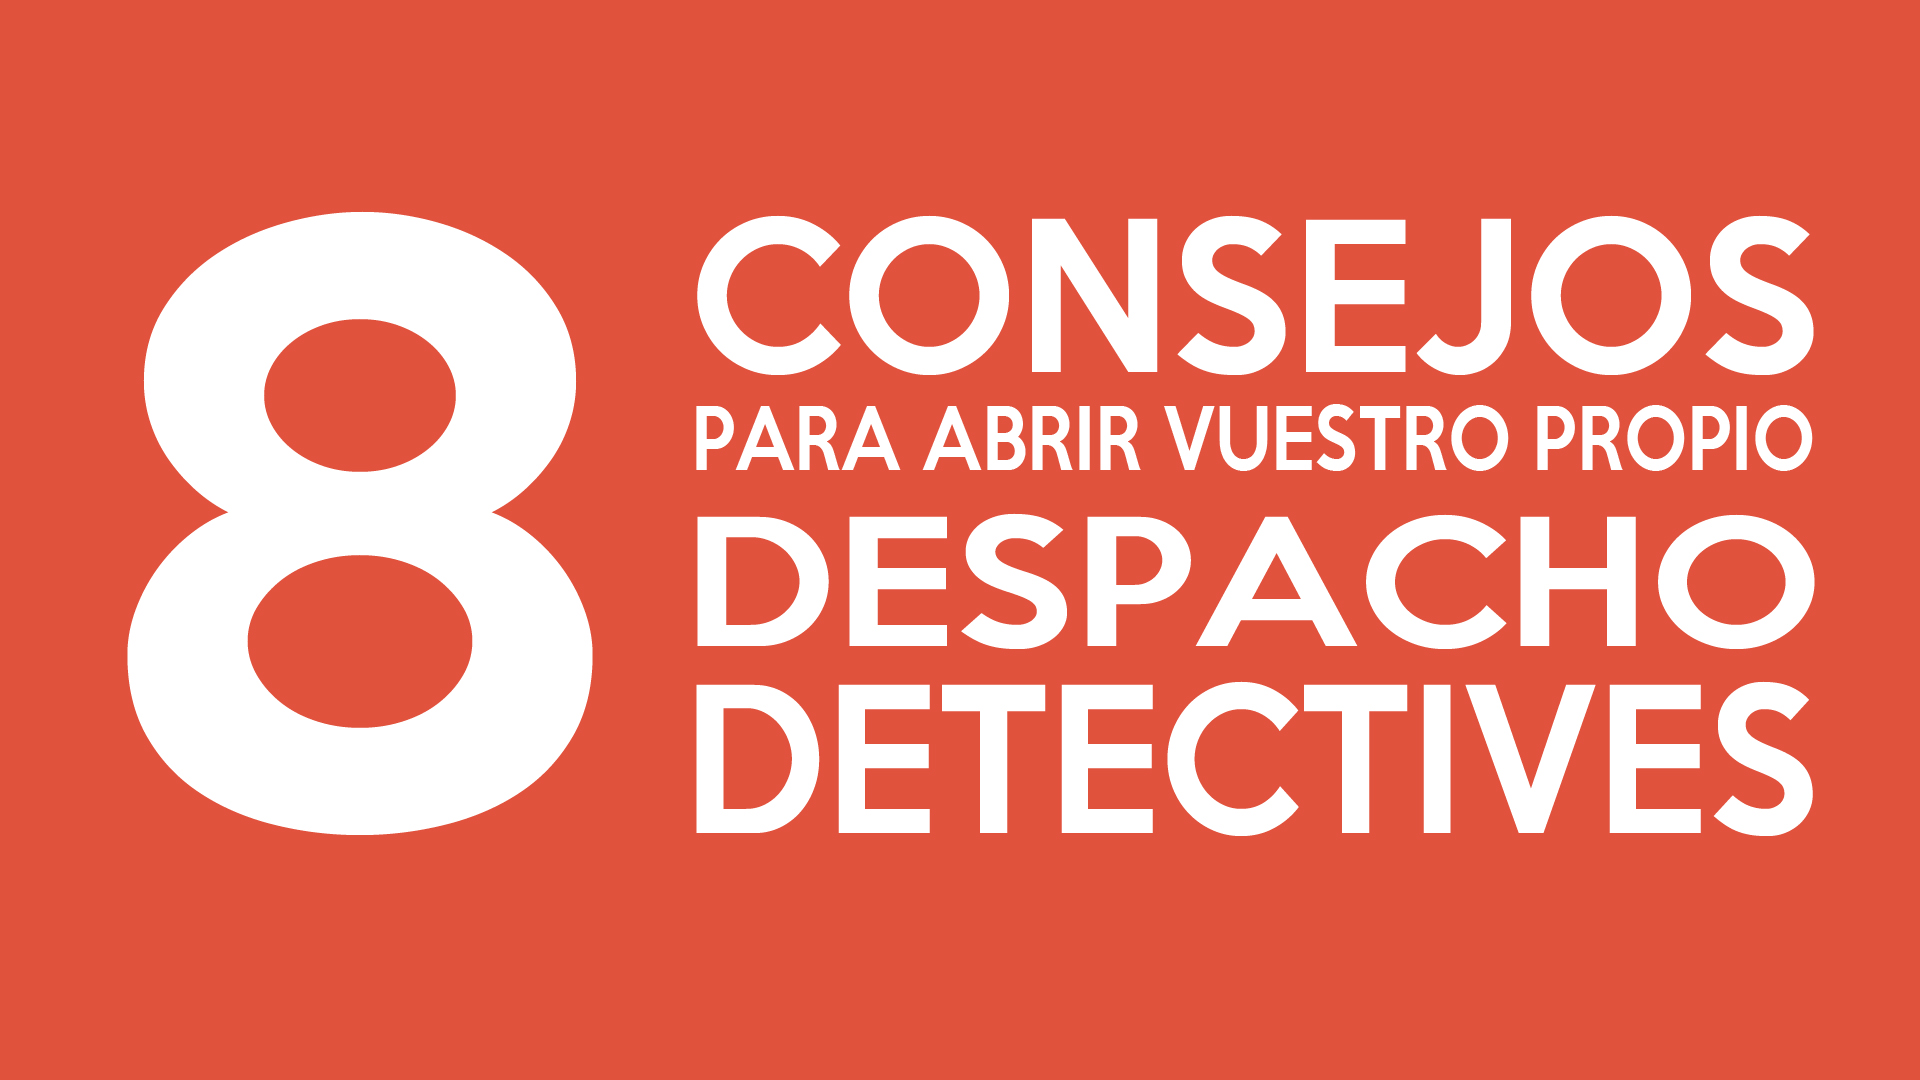 8 CONSEJOS PARA ABRIR VUESTRO PROPIO DESPACHO DE DETECTIVES